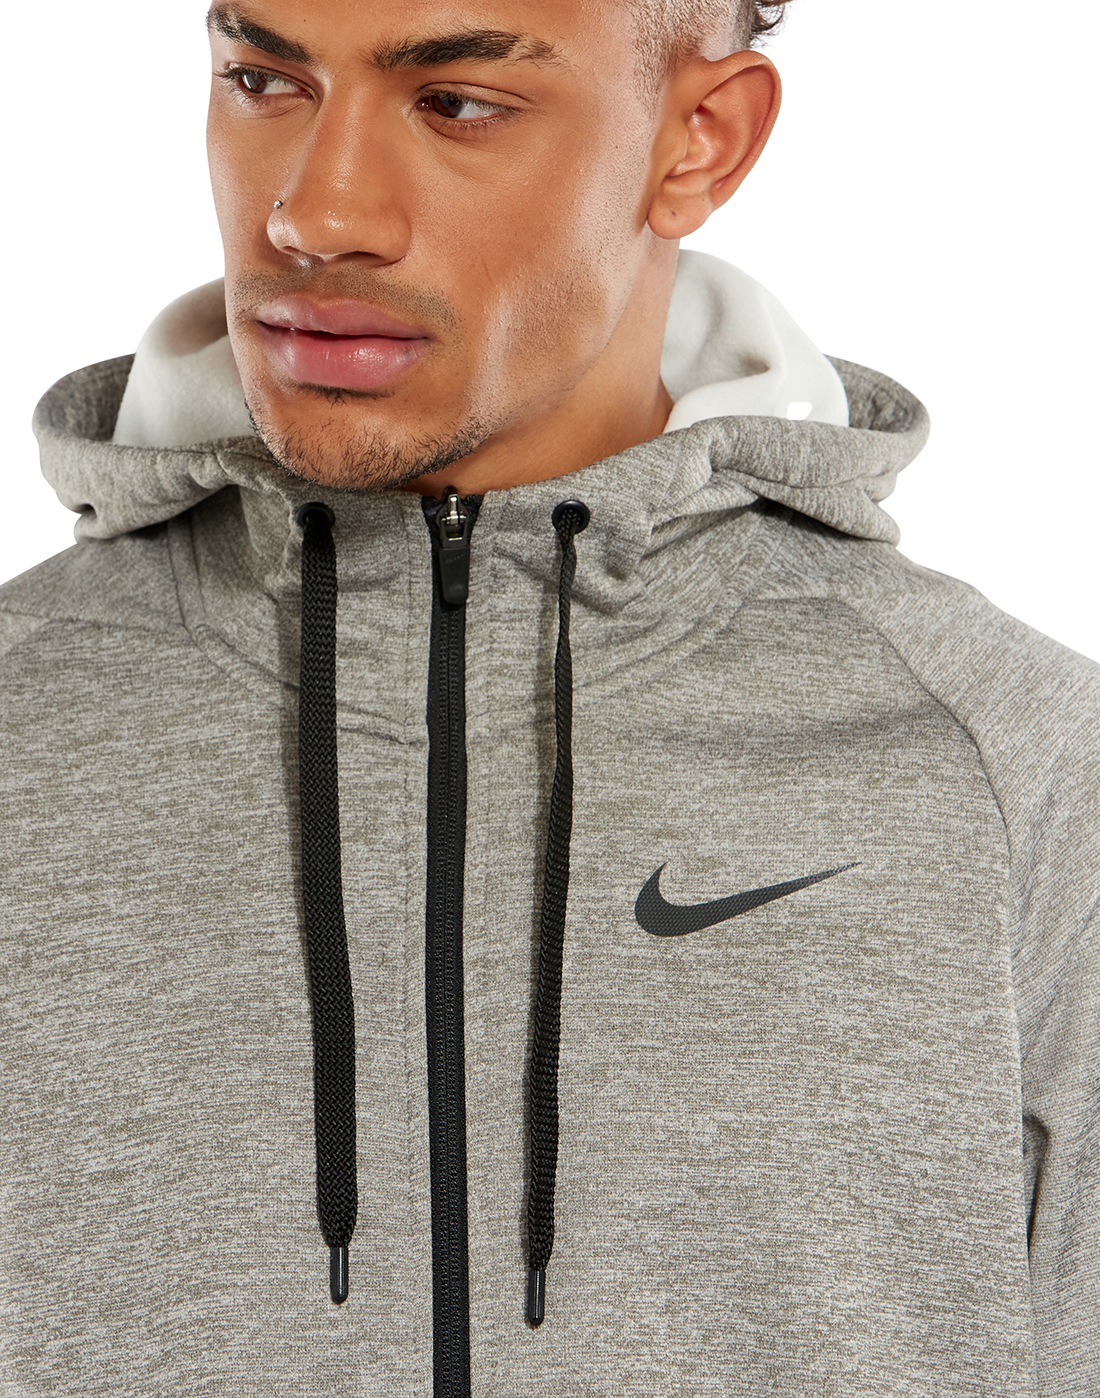 Nike Mens Therma Fleece Full Zip Hoodie - Grey | Life Style Sports IE